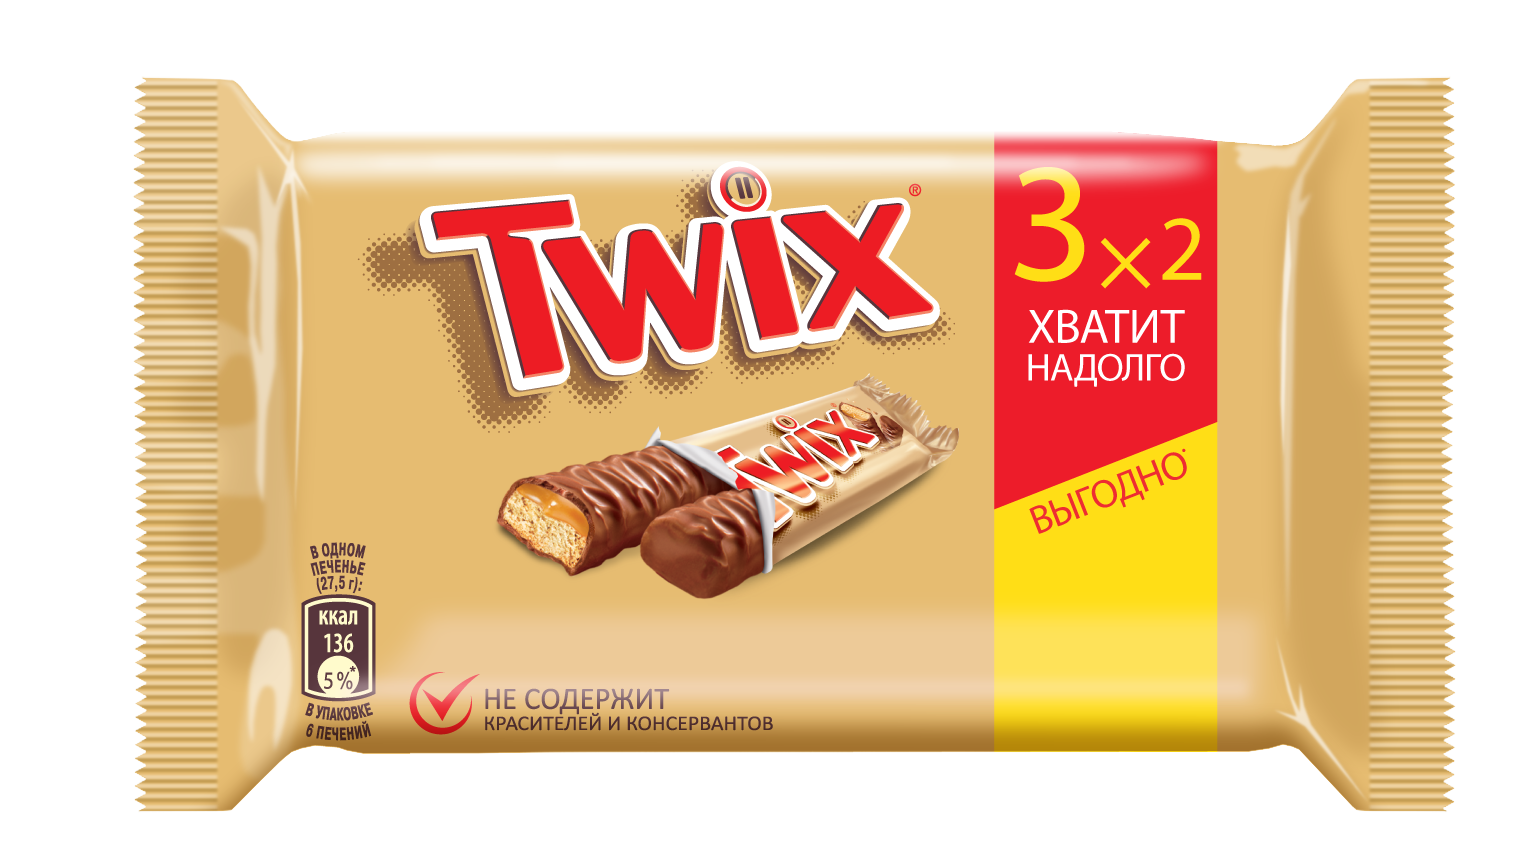 Шоколадный батончик Twix 55 г х 3 шт - купить в Мегамаркет Москва, цена на Мегамаркет